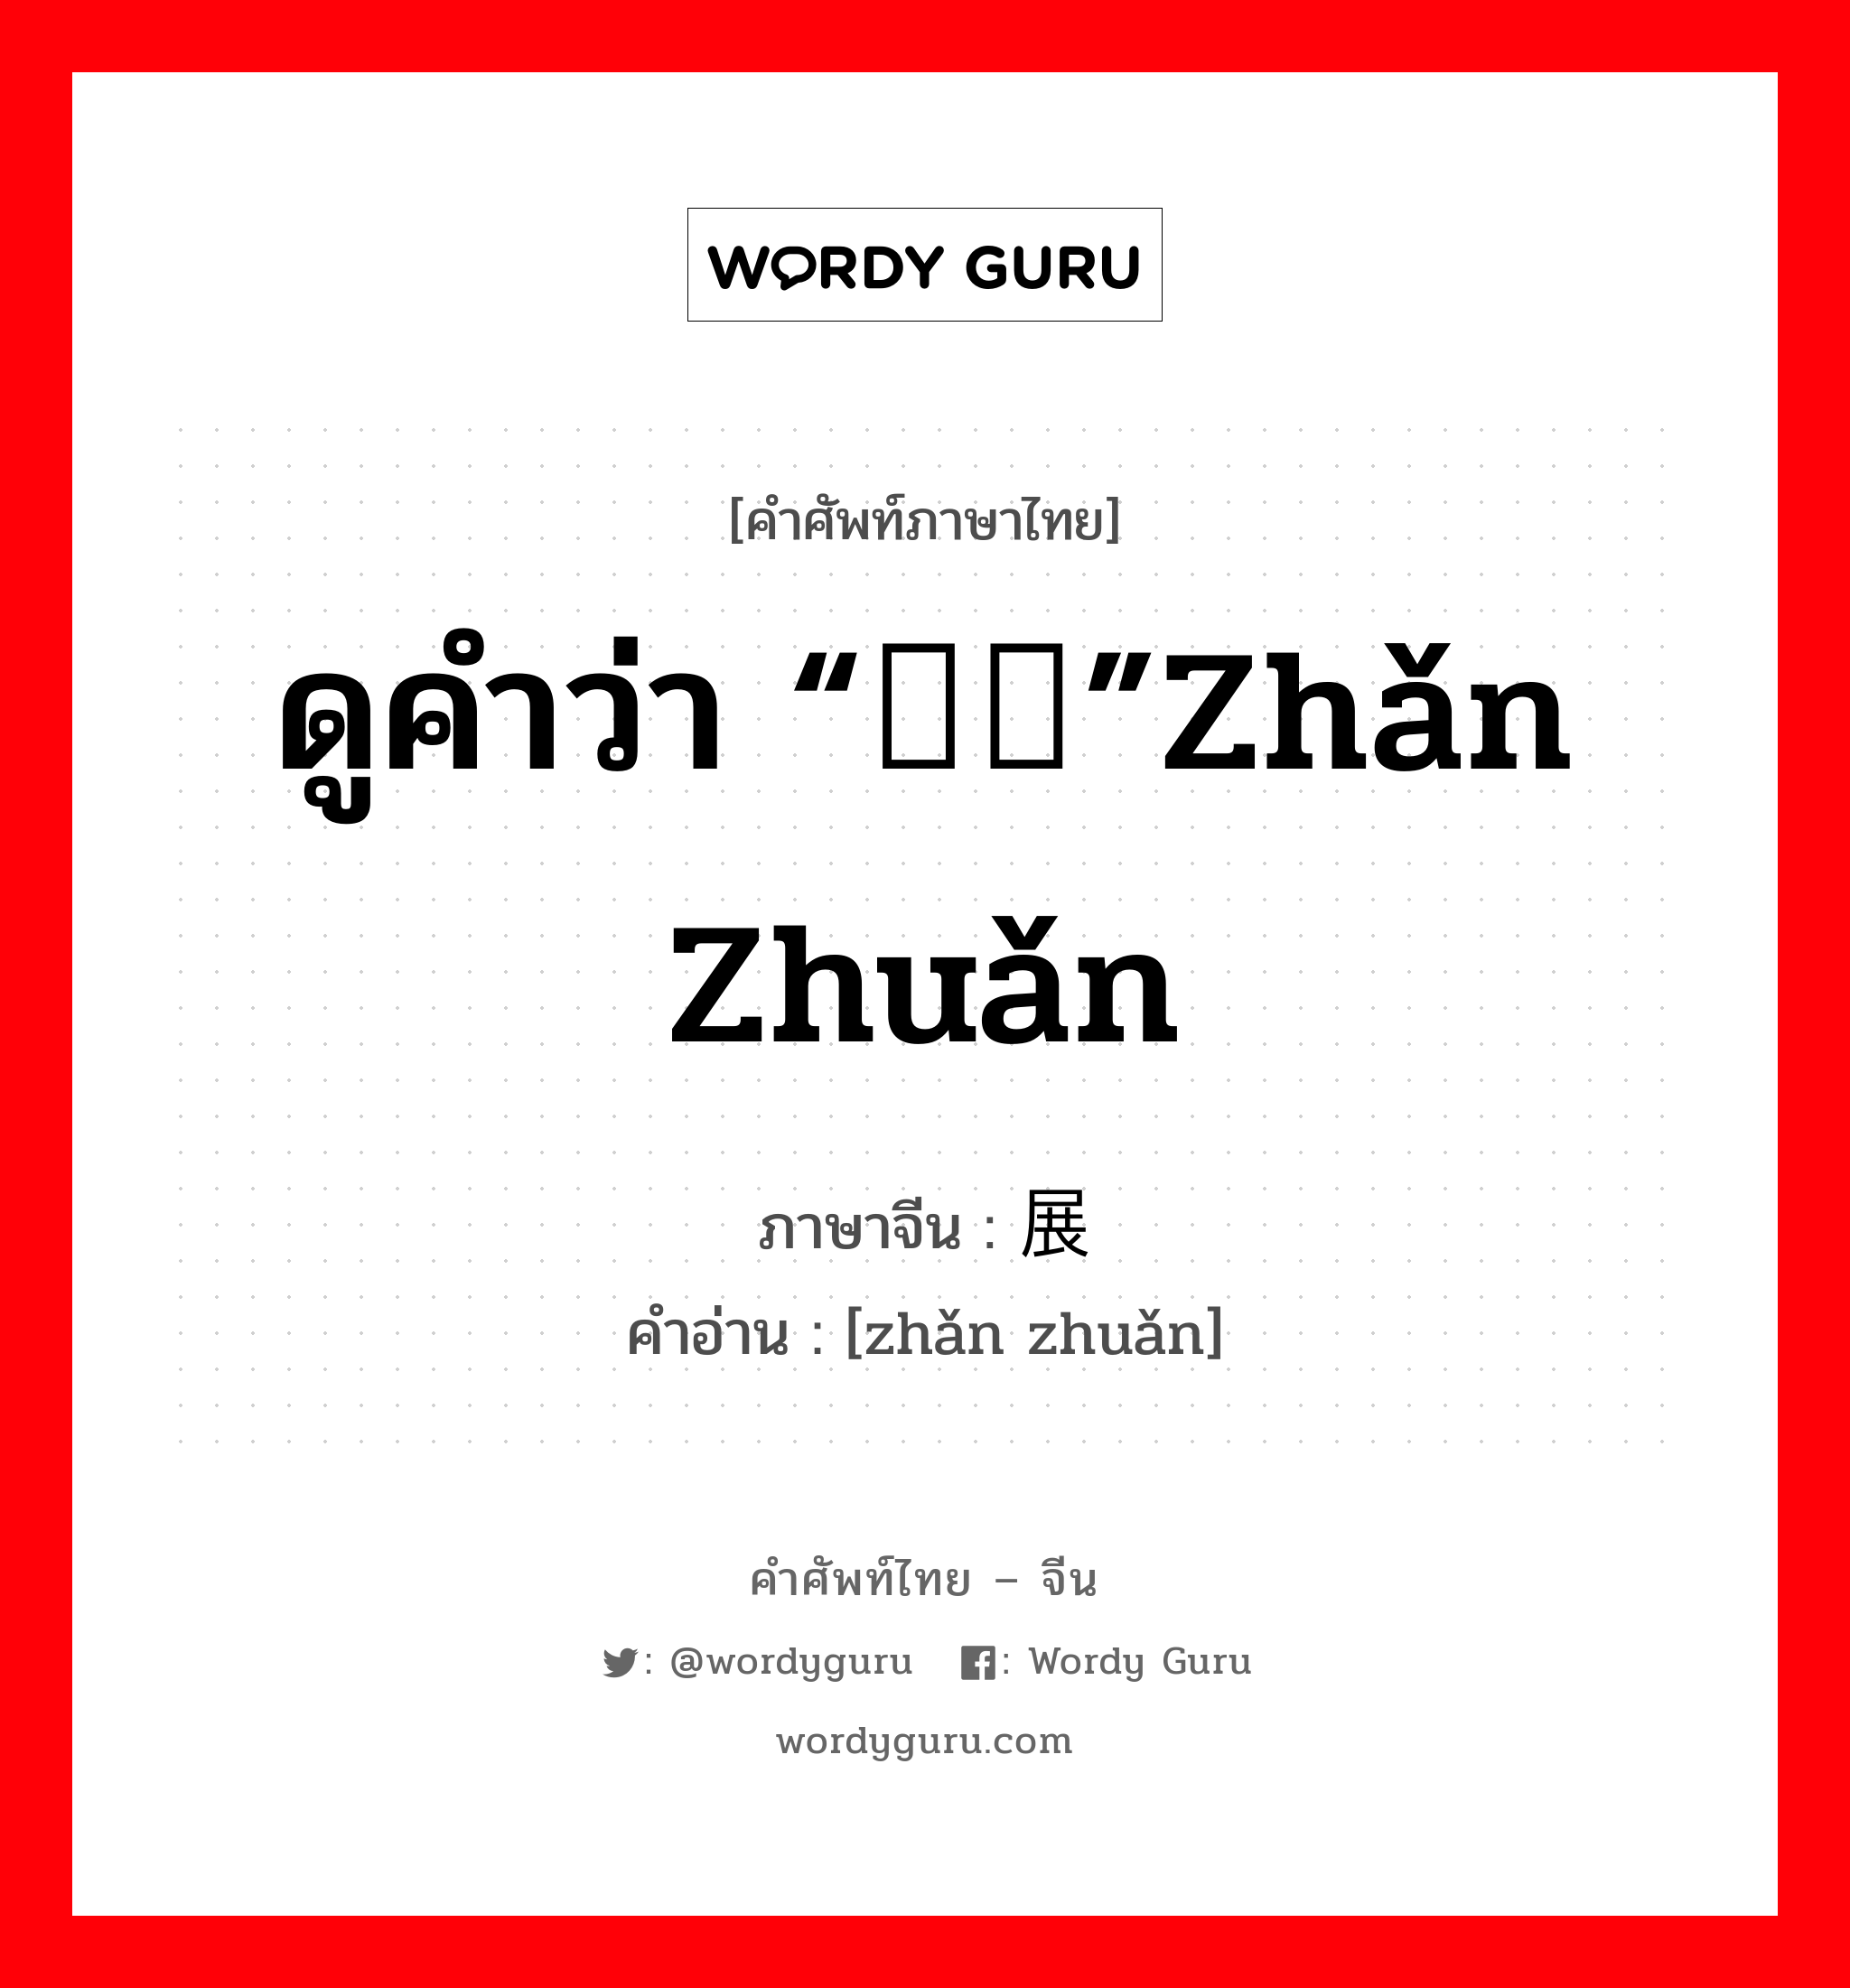 ดูคำว่า “辗转”zhǎn zhuǎn ภาษาจีนคืออะไร, คำศัพท์ภาษาไทย - จีน ดูคำว่า “辗转”zhǎn zhuǎn ภาษาจีน 展转 คำอ่าน [zhǎn zhuǎn]